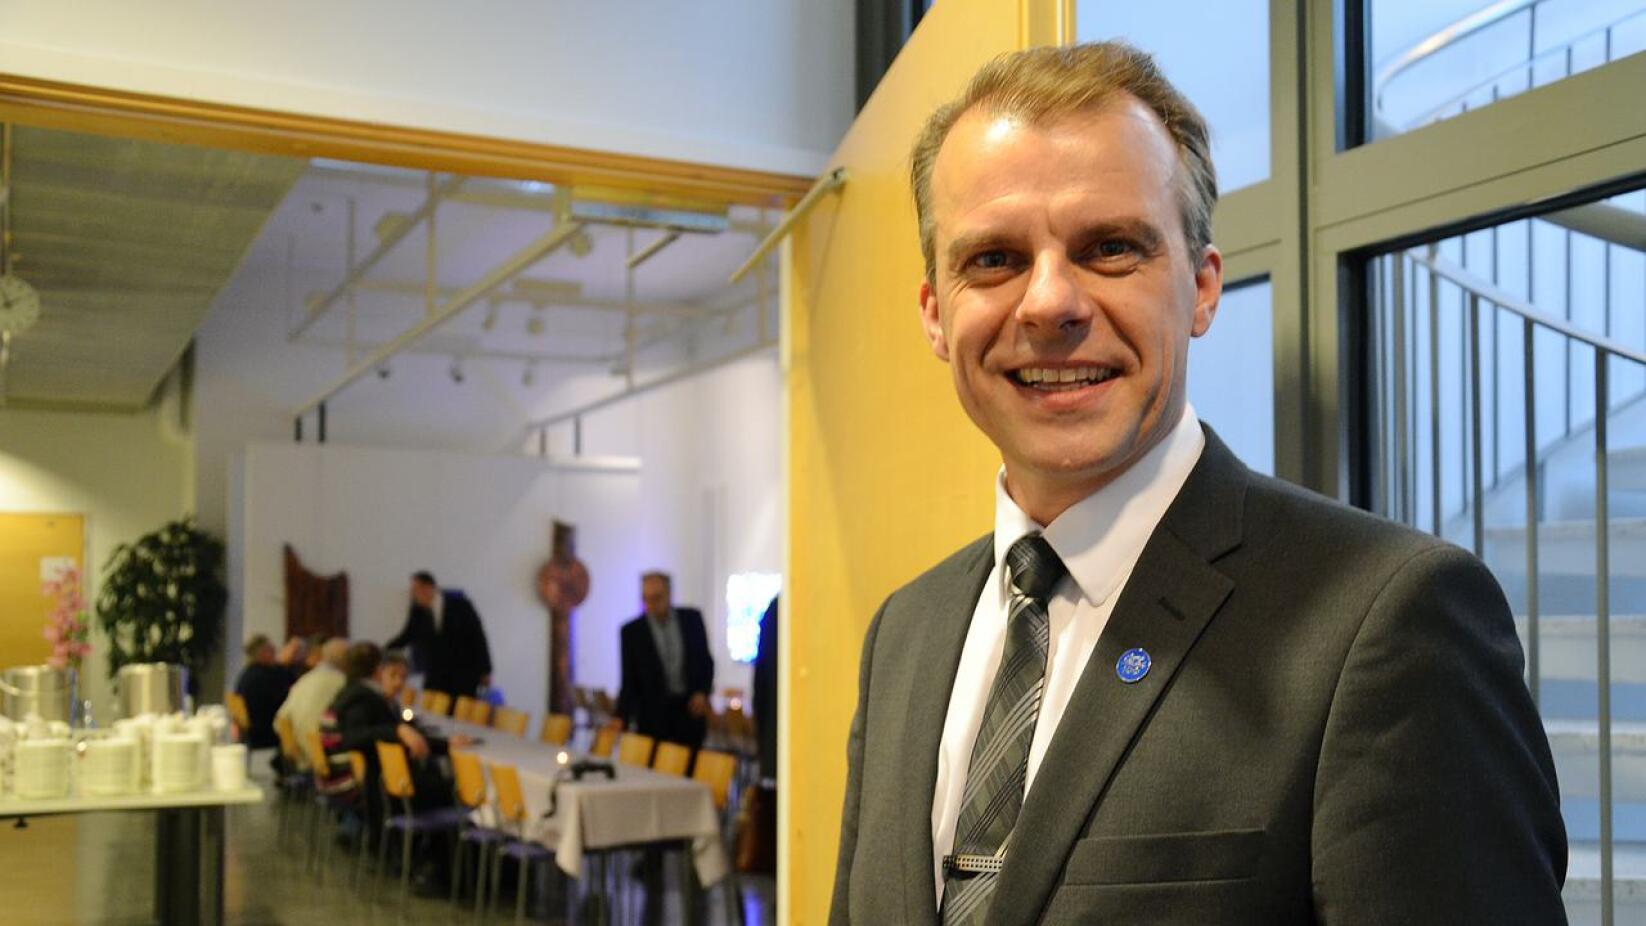 – Täyttä ajojahtia. Nyt kannattaa katsoa, mikä puolue hyötyy Lintilän kannatuksen mahdollisesta laskusta, totesi ylivieskalainen kansanedustaja Juha Pylväs haastattelussa.